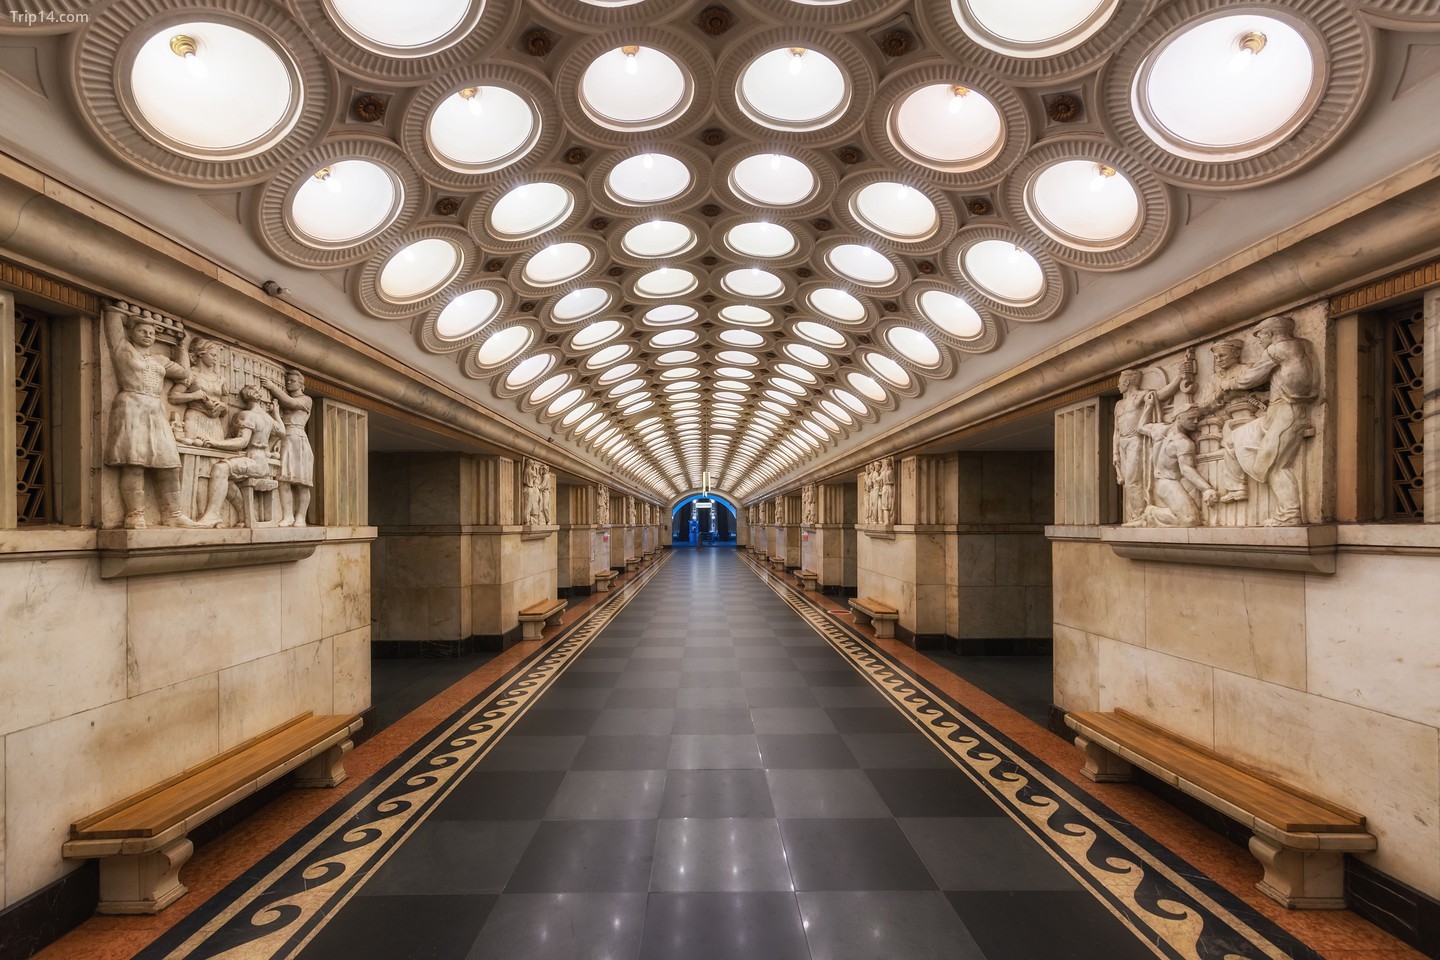 Ga tàu điện ngầm Elektrozavodskaya Moscow, Nga